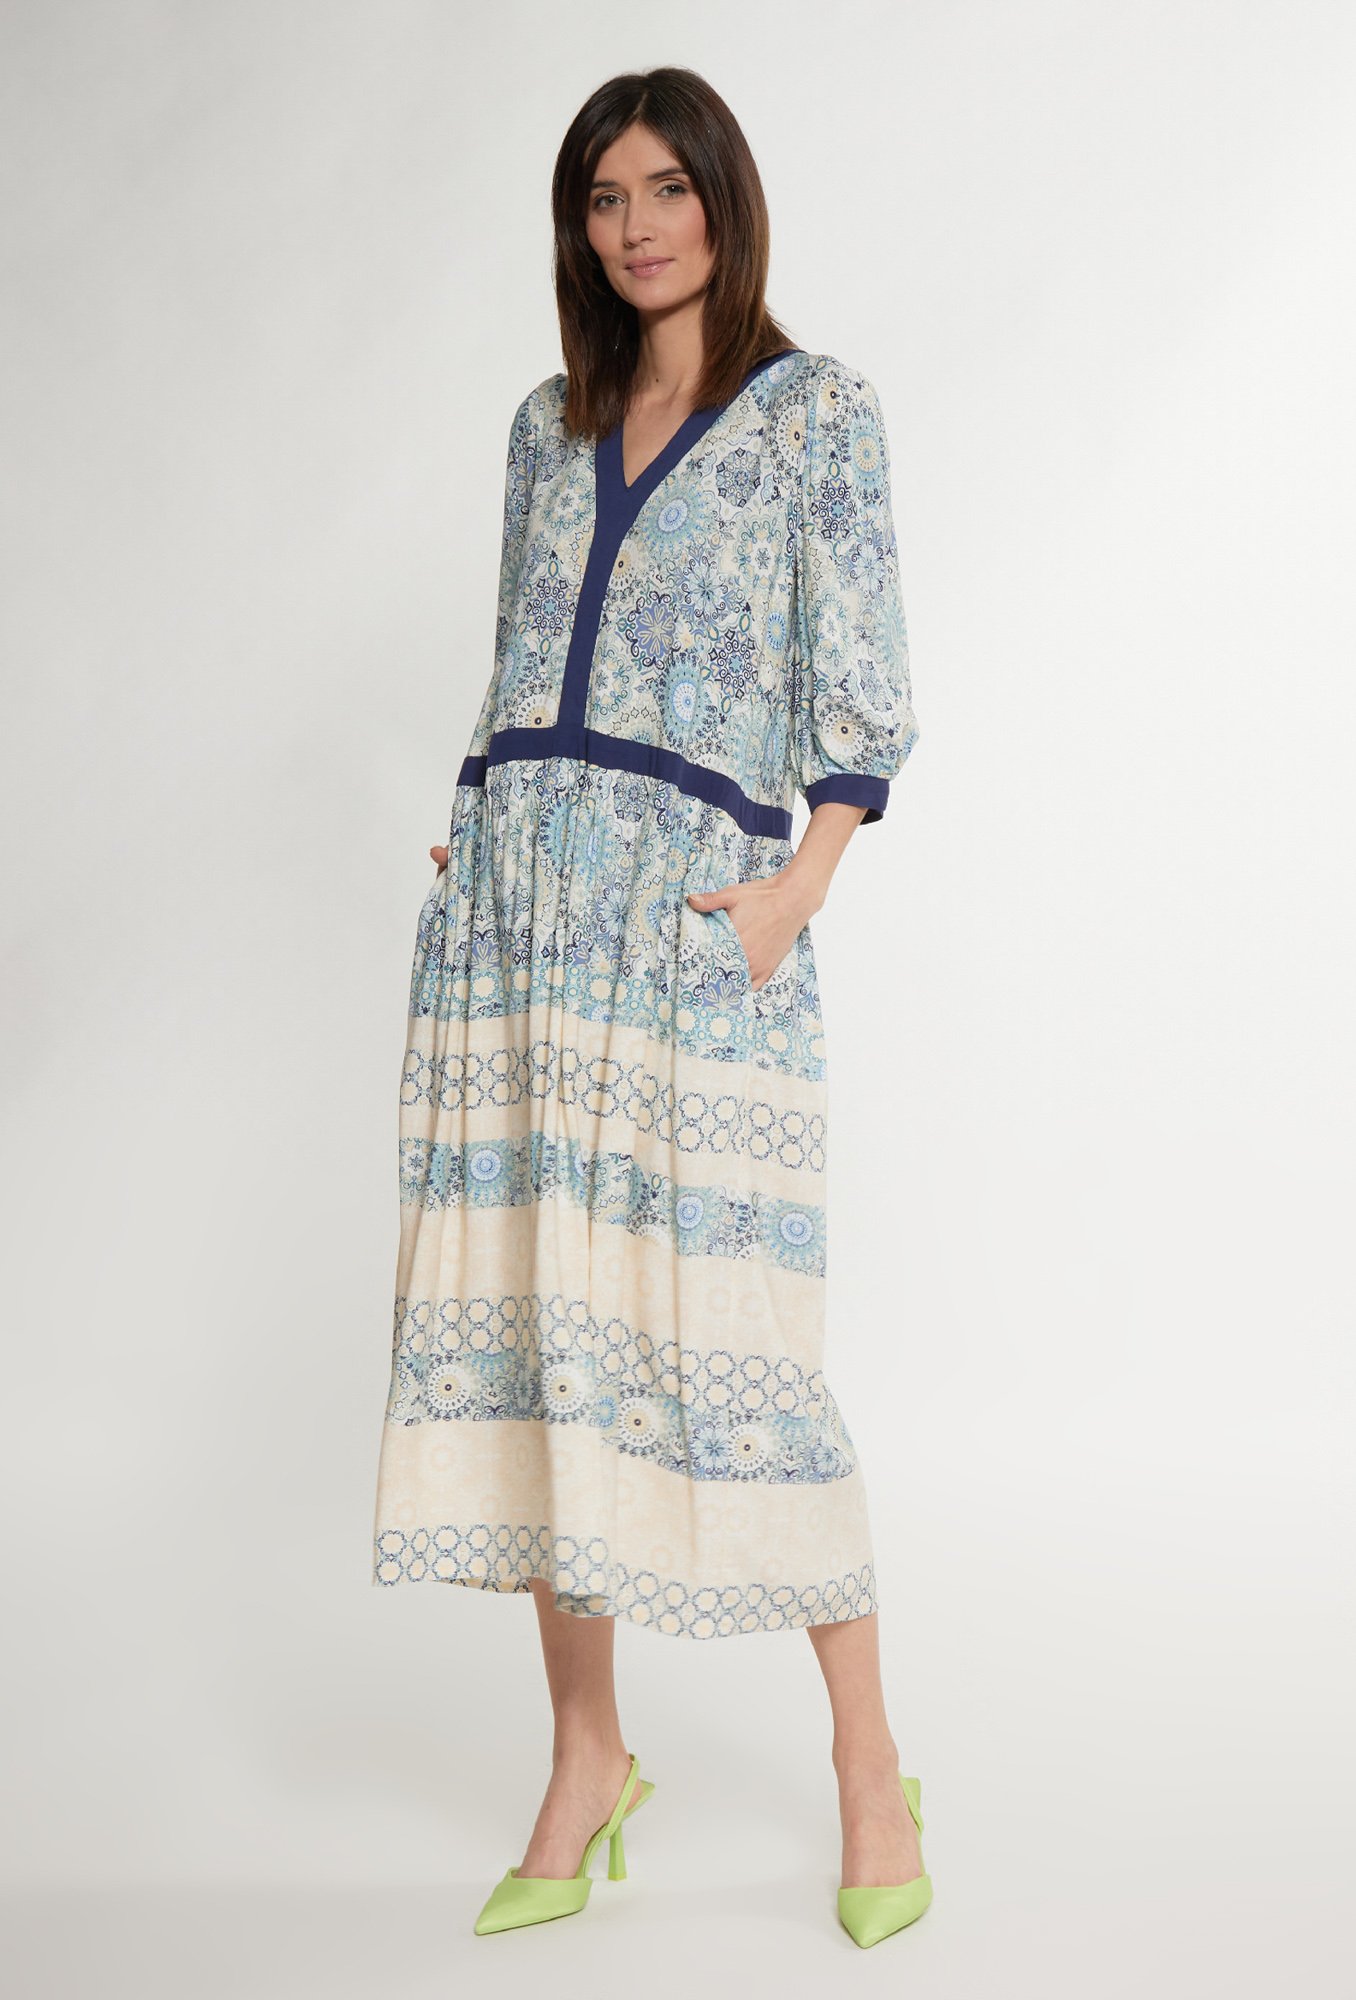 MONNARI Woman's Midi Dresses Patterned Midi Dress Multi Blue